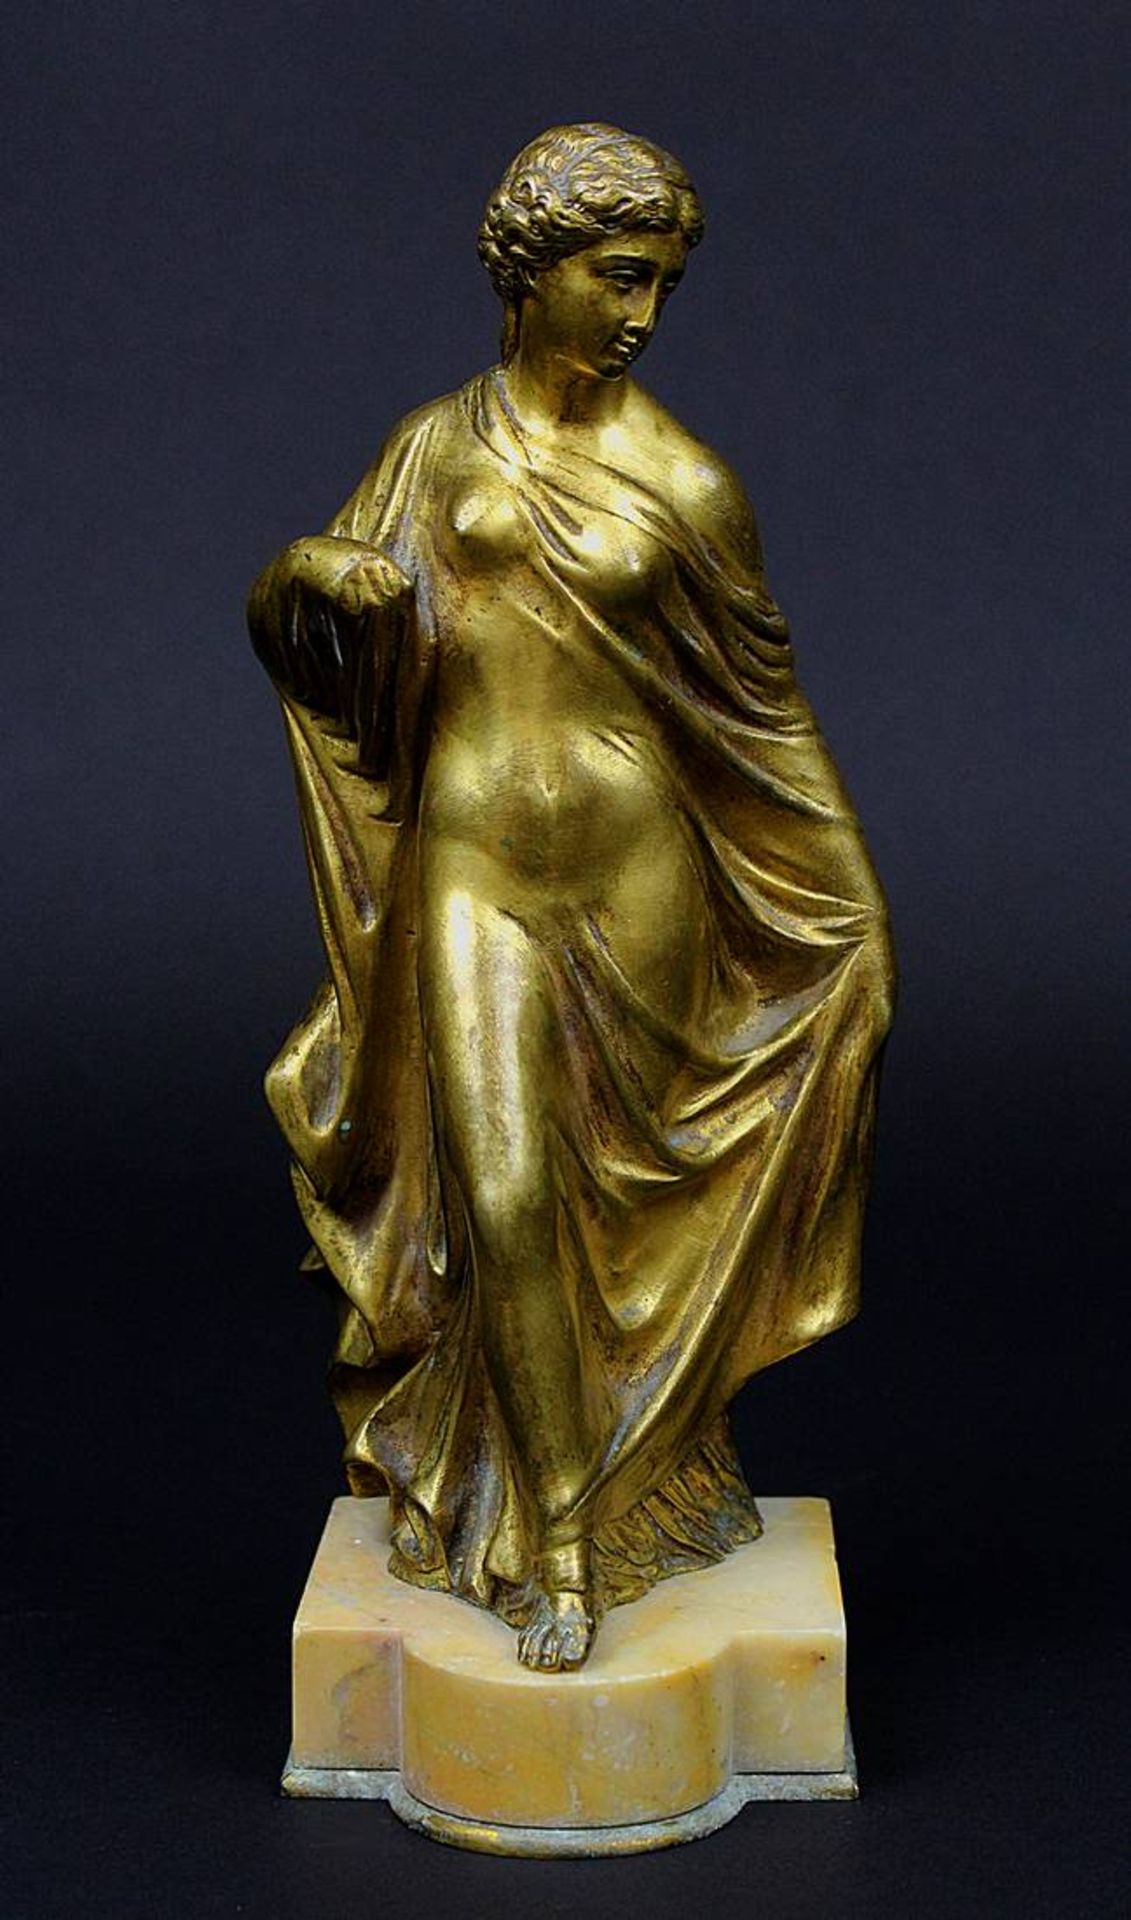 Bronzefigur, vergoldet, 19. Jh., schreitende Frauefigur in Gewandung der Antike, die linke